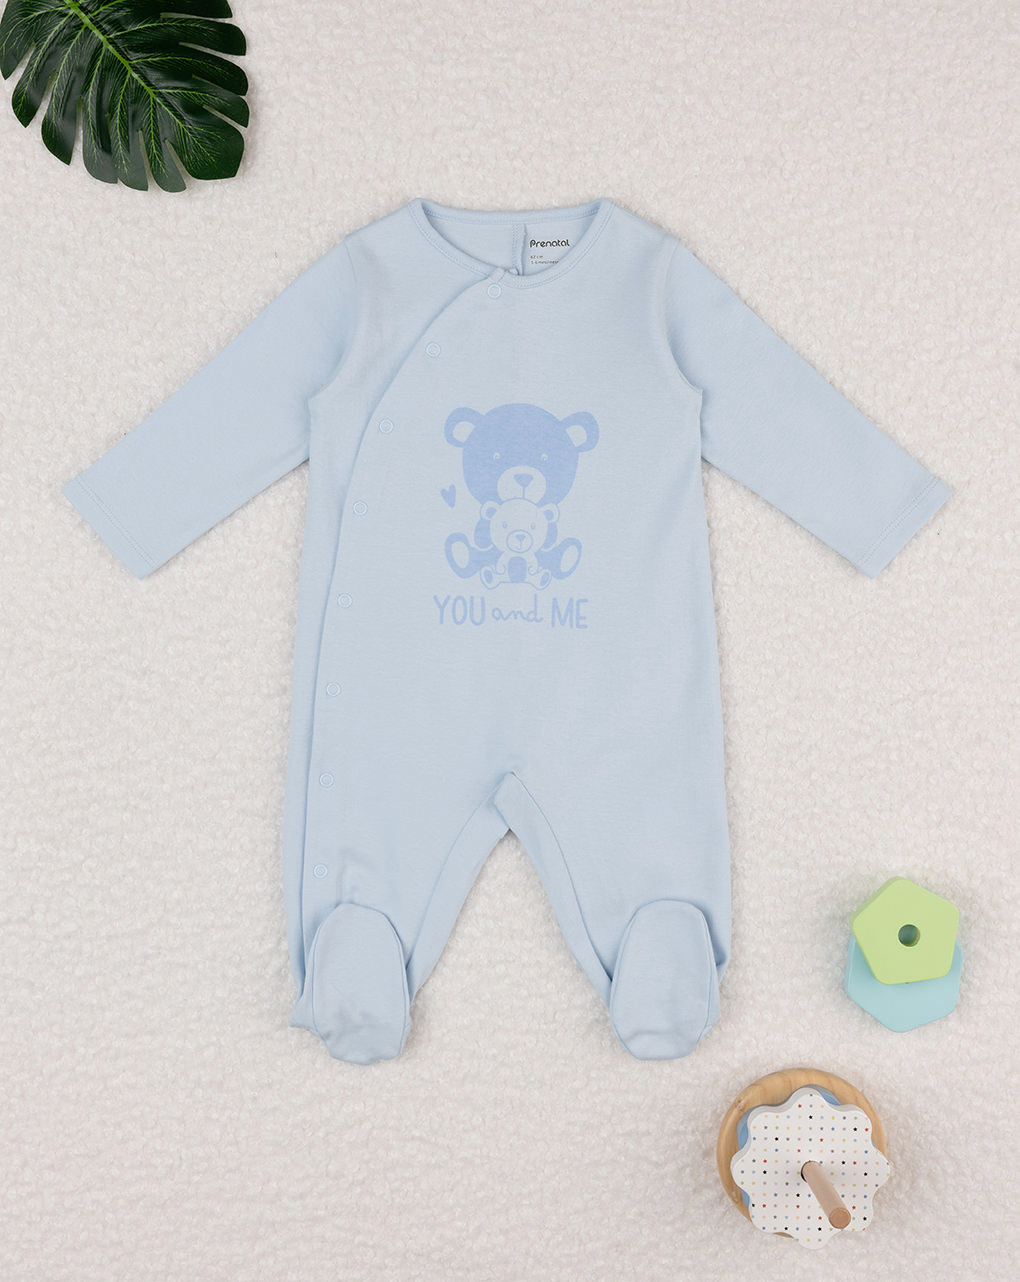 Pelele azul bebé osito - Prénatal